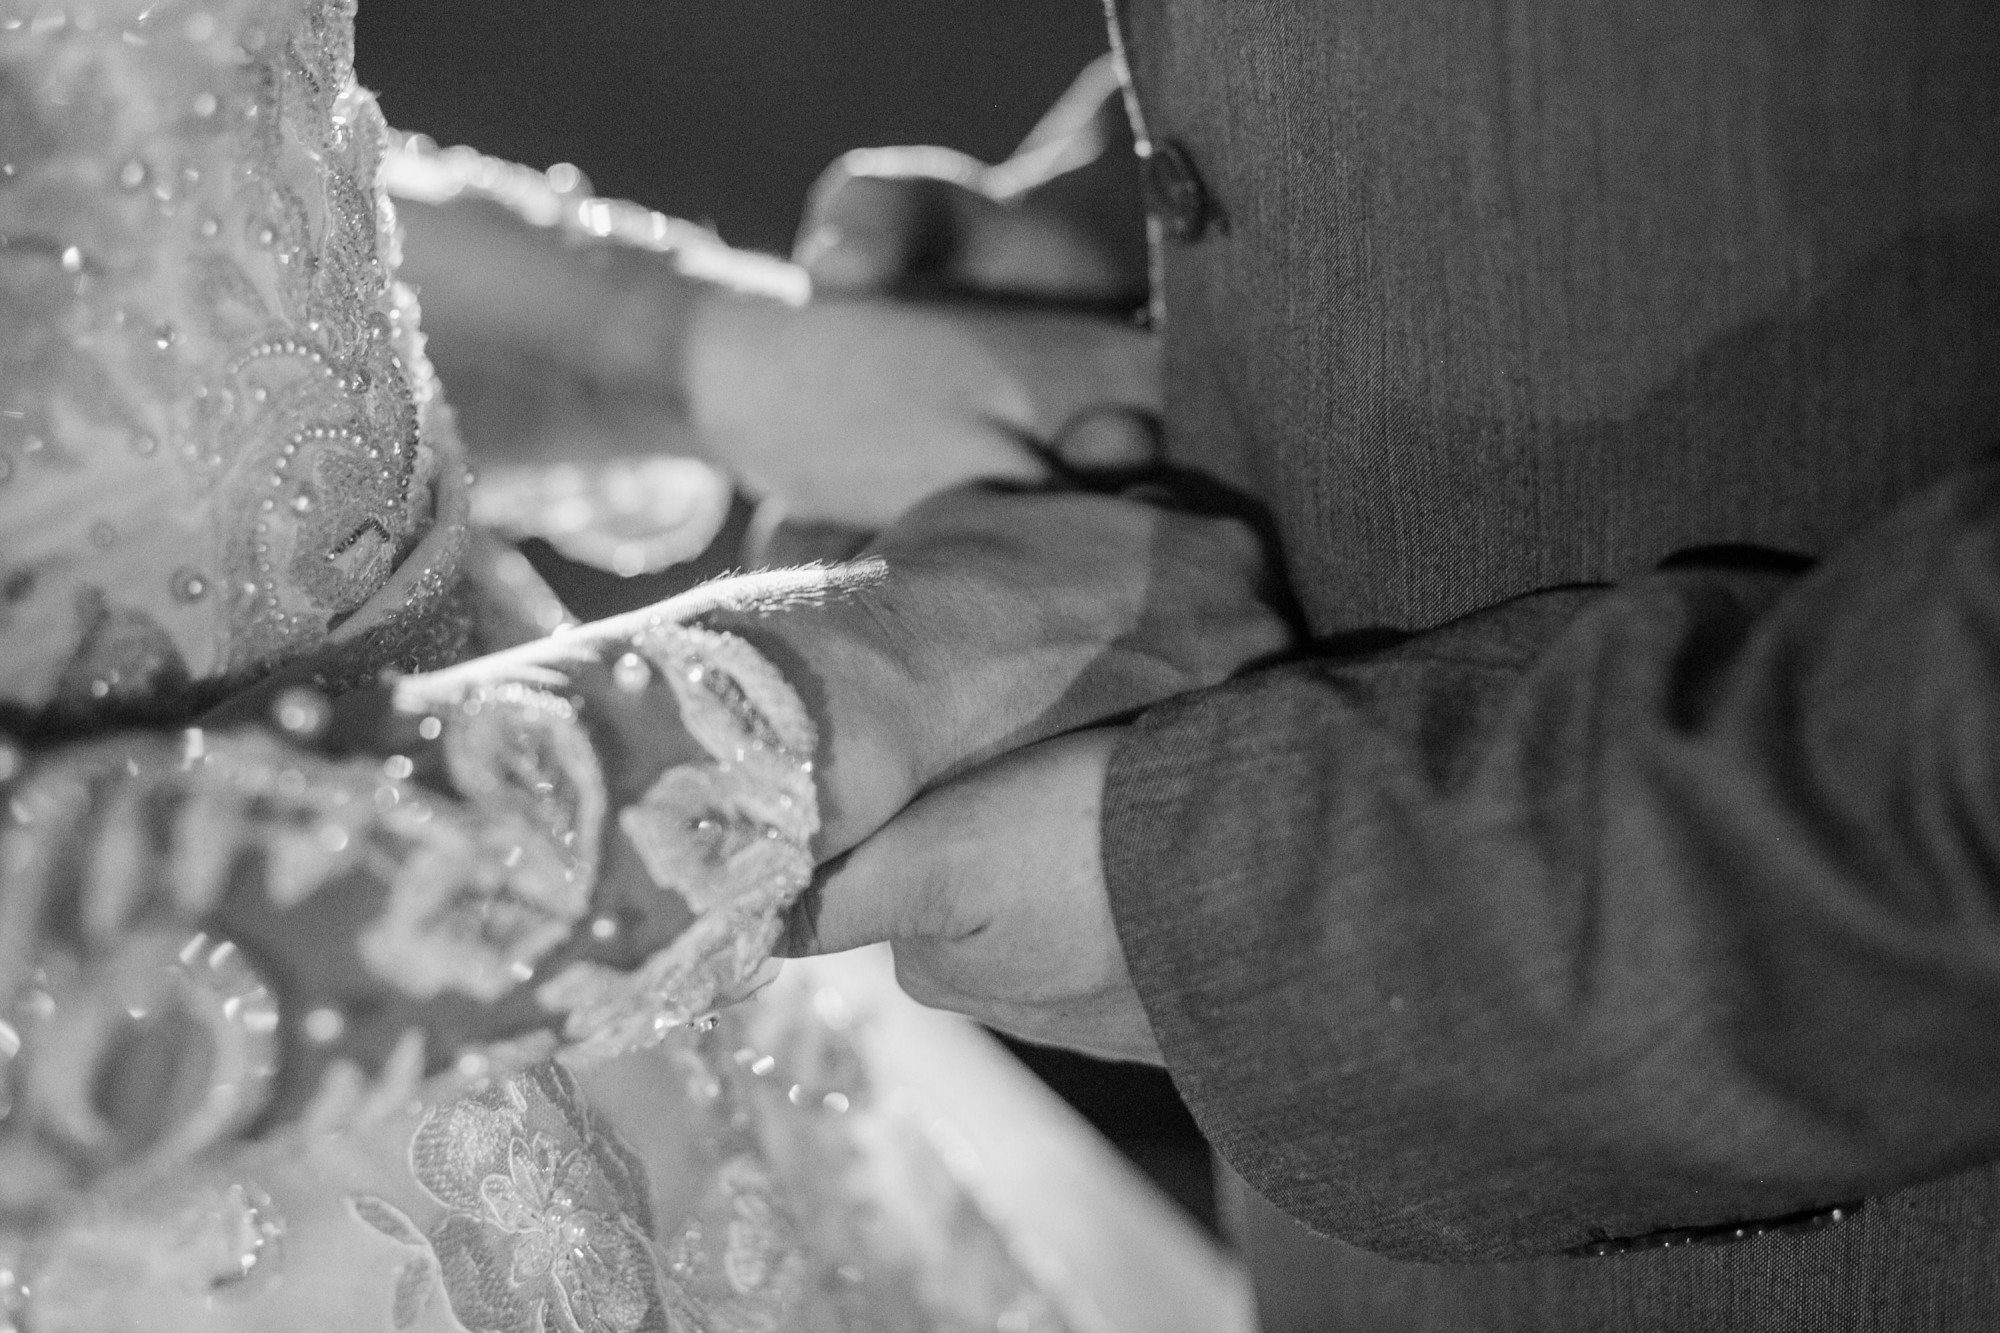 Casamento Anderson e Juliana Fioreli em Iporã Paraná - por Lorran Souza e Léia Sotile - Fotografos de casamentos - JA-2076